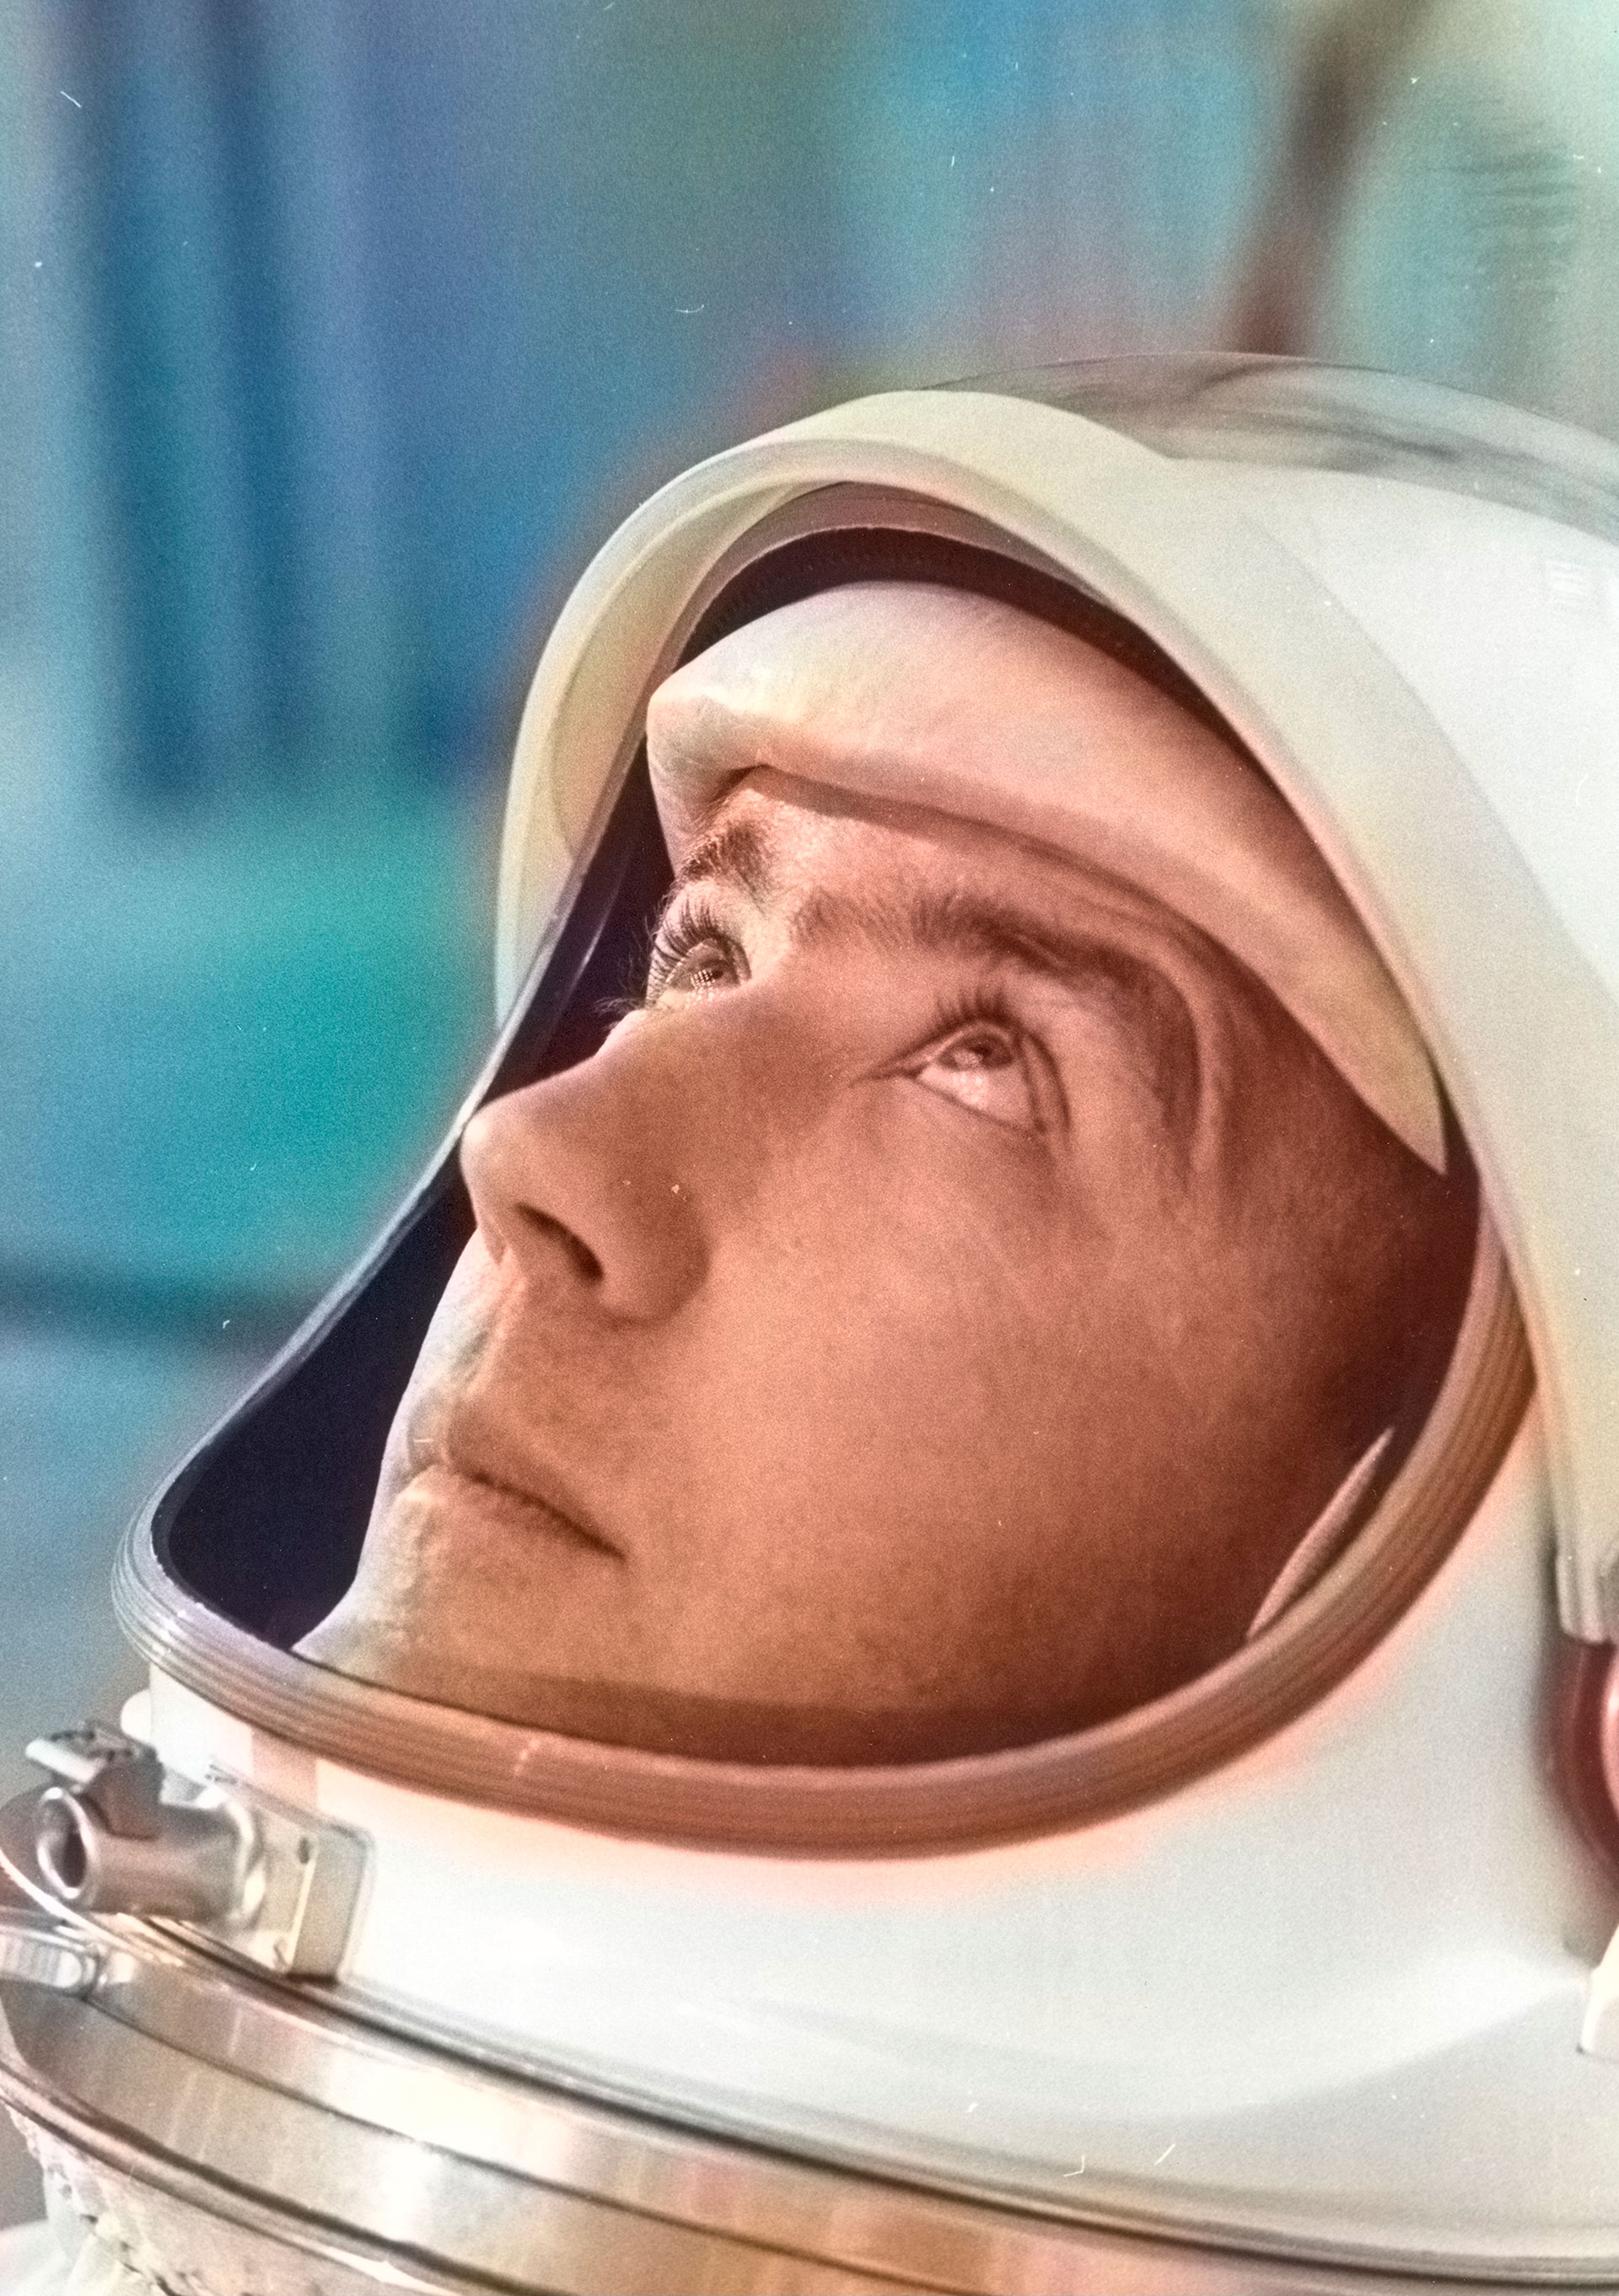 El comandante de Gemini IV, el astronauta James A. McDivitt, se preparó para las pruebas de peso y equilibrio, 21 de mayo de 1965. Imagen cortesía de la Administración Nacional de Aeronáutica y del Espacio (NASA). Nota: la imagen se ha coloreado digitalmente mediante un proceso moderno. Los colores pueden no ser precisos para el período. (Foto de la Colección Smith/Gado/Getty Images)
